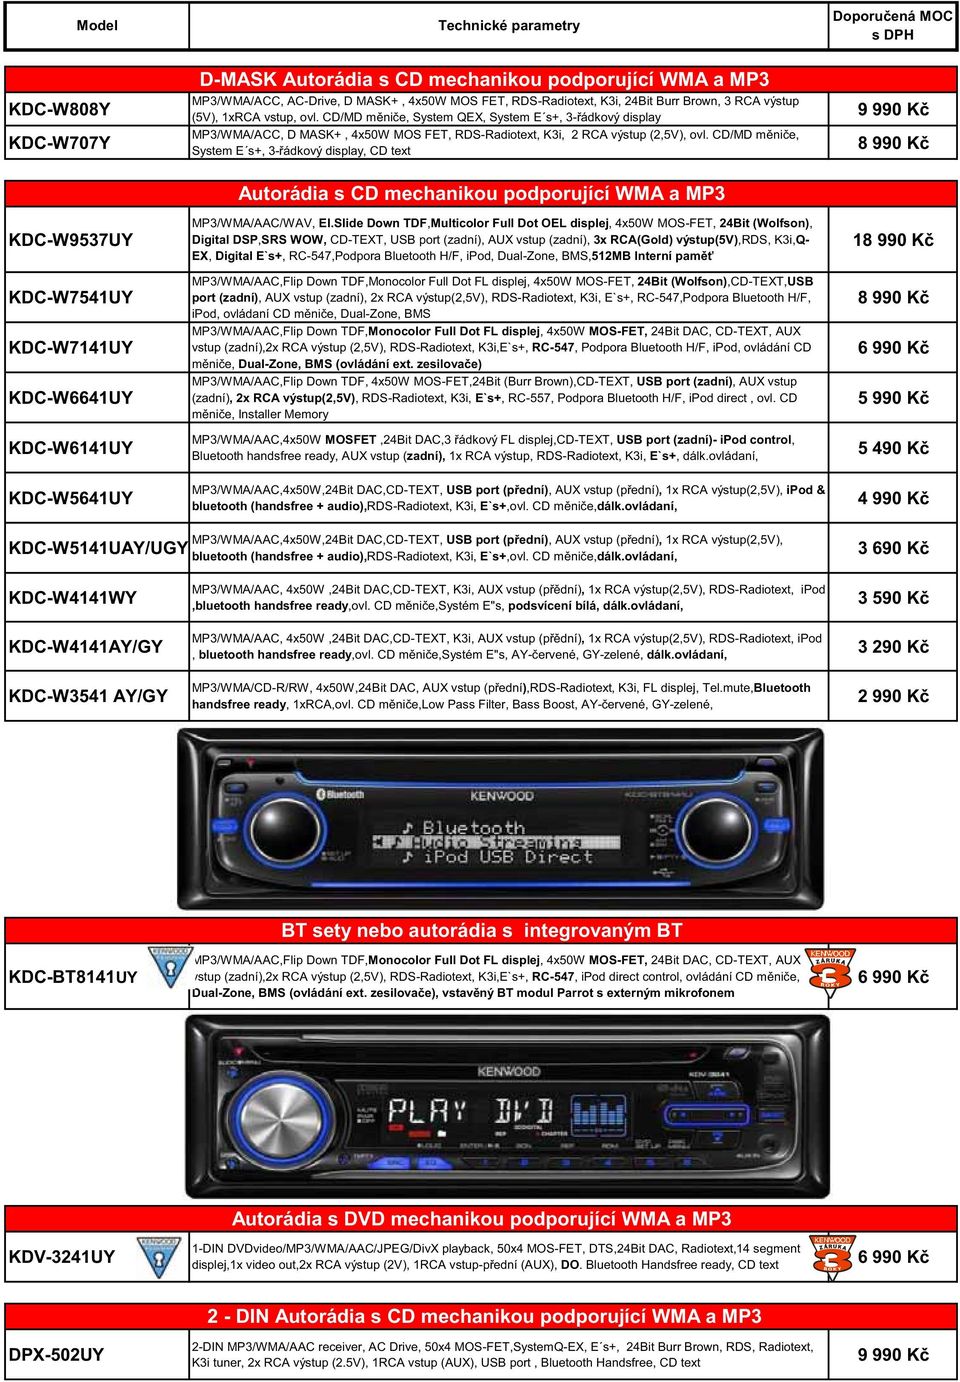 CD/MD m ni e, System QEX, System E s+, 3- ádkový display MP3/WMA/ACC, D MASK+, 4x50W MOS FET, RDS-Radiotext, K3i, 2 RCA výstup (2,5V), ovl.